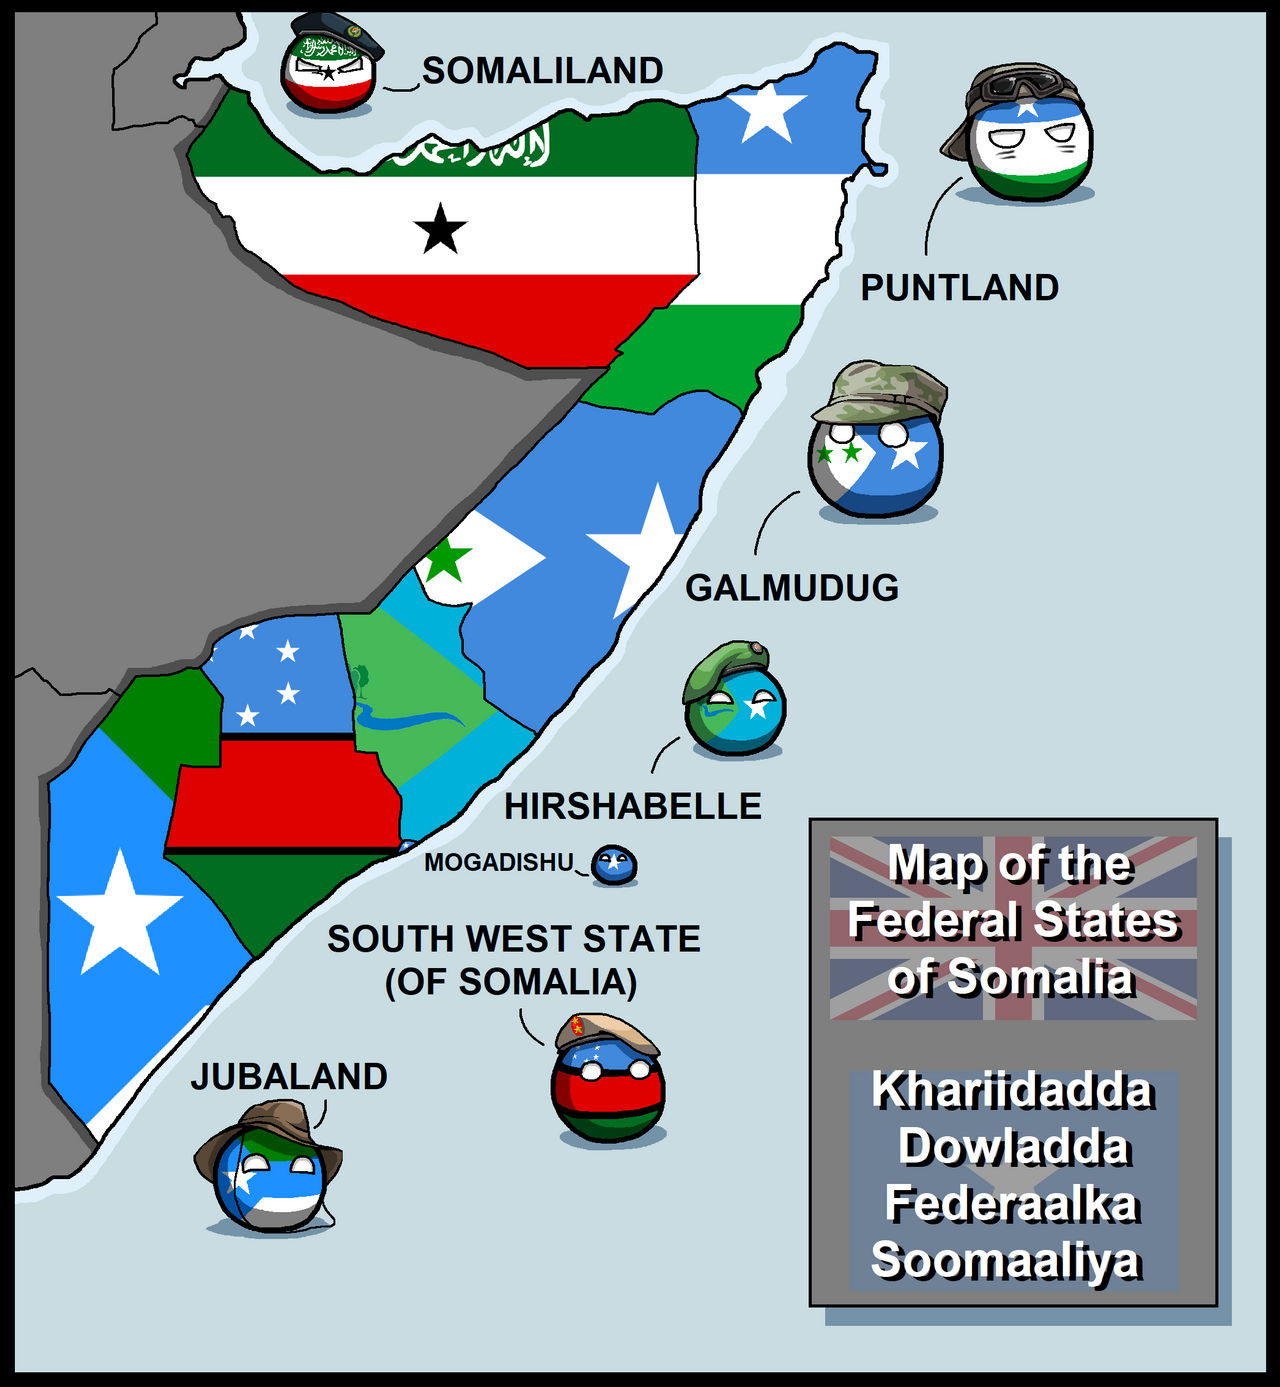 Federal States of Somalia